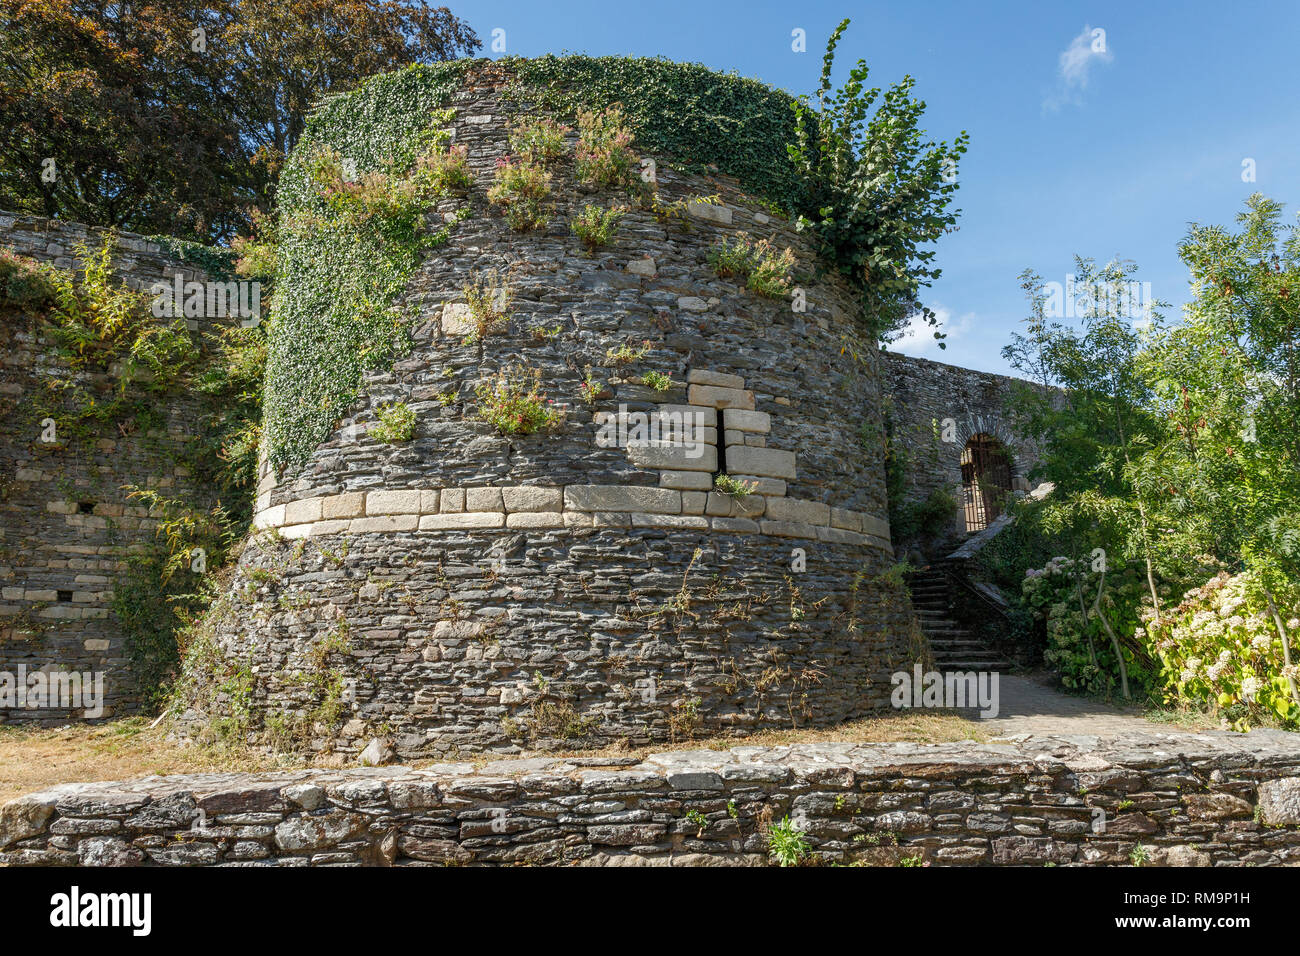 Francia, Morbihan, Rochefort en Terre, etiquetados Les Plus Beaux aldeas de France (Los pueblos más bellos de Francia), el castillo de fortificaciones, Chemi Foto de stock